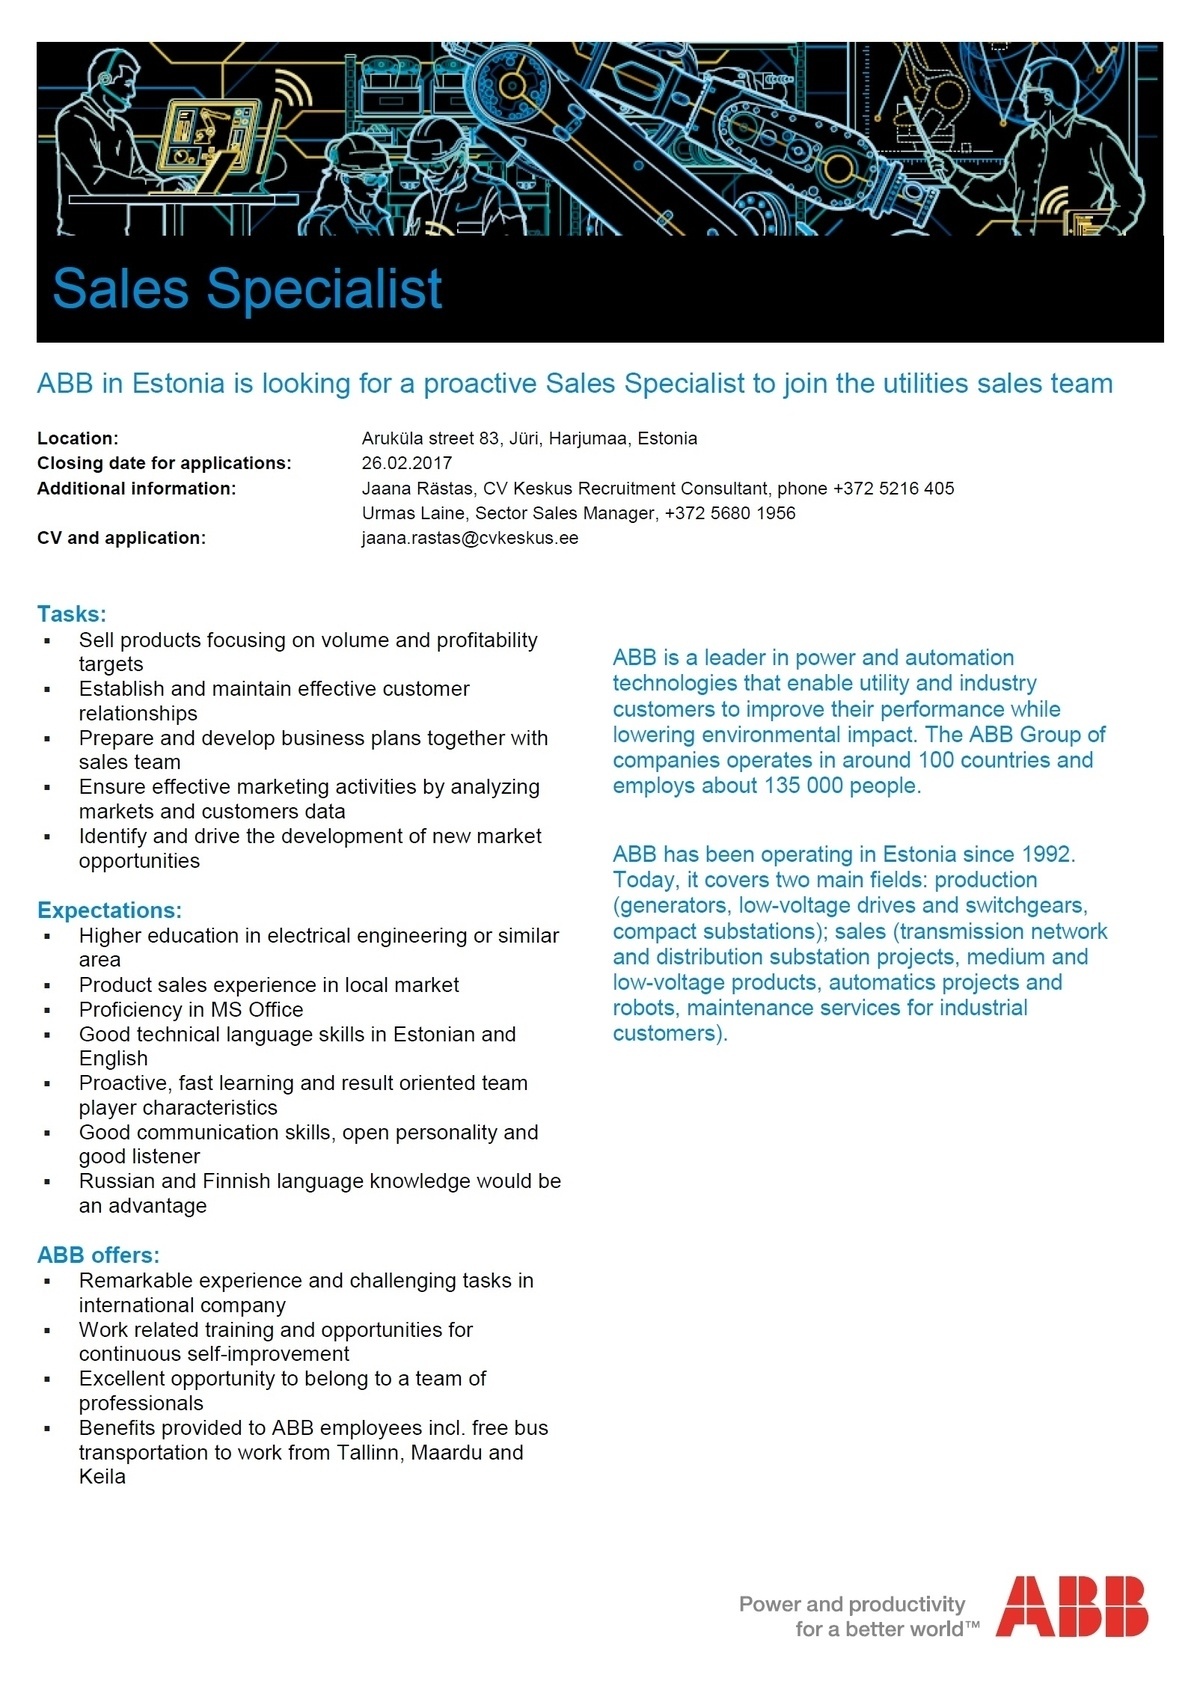 CV KESKUS OÜ ABB is looking for a Sales Specialist